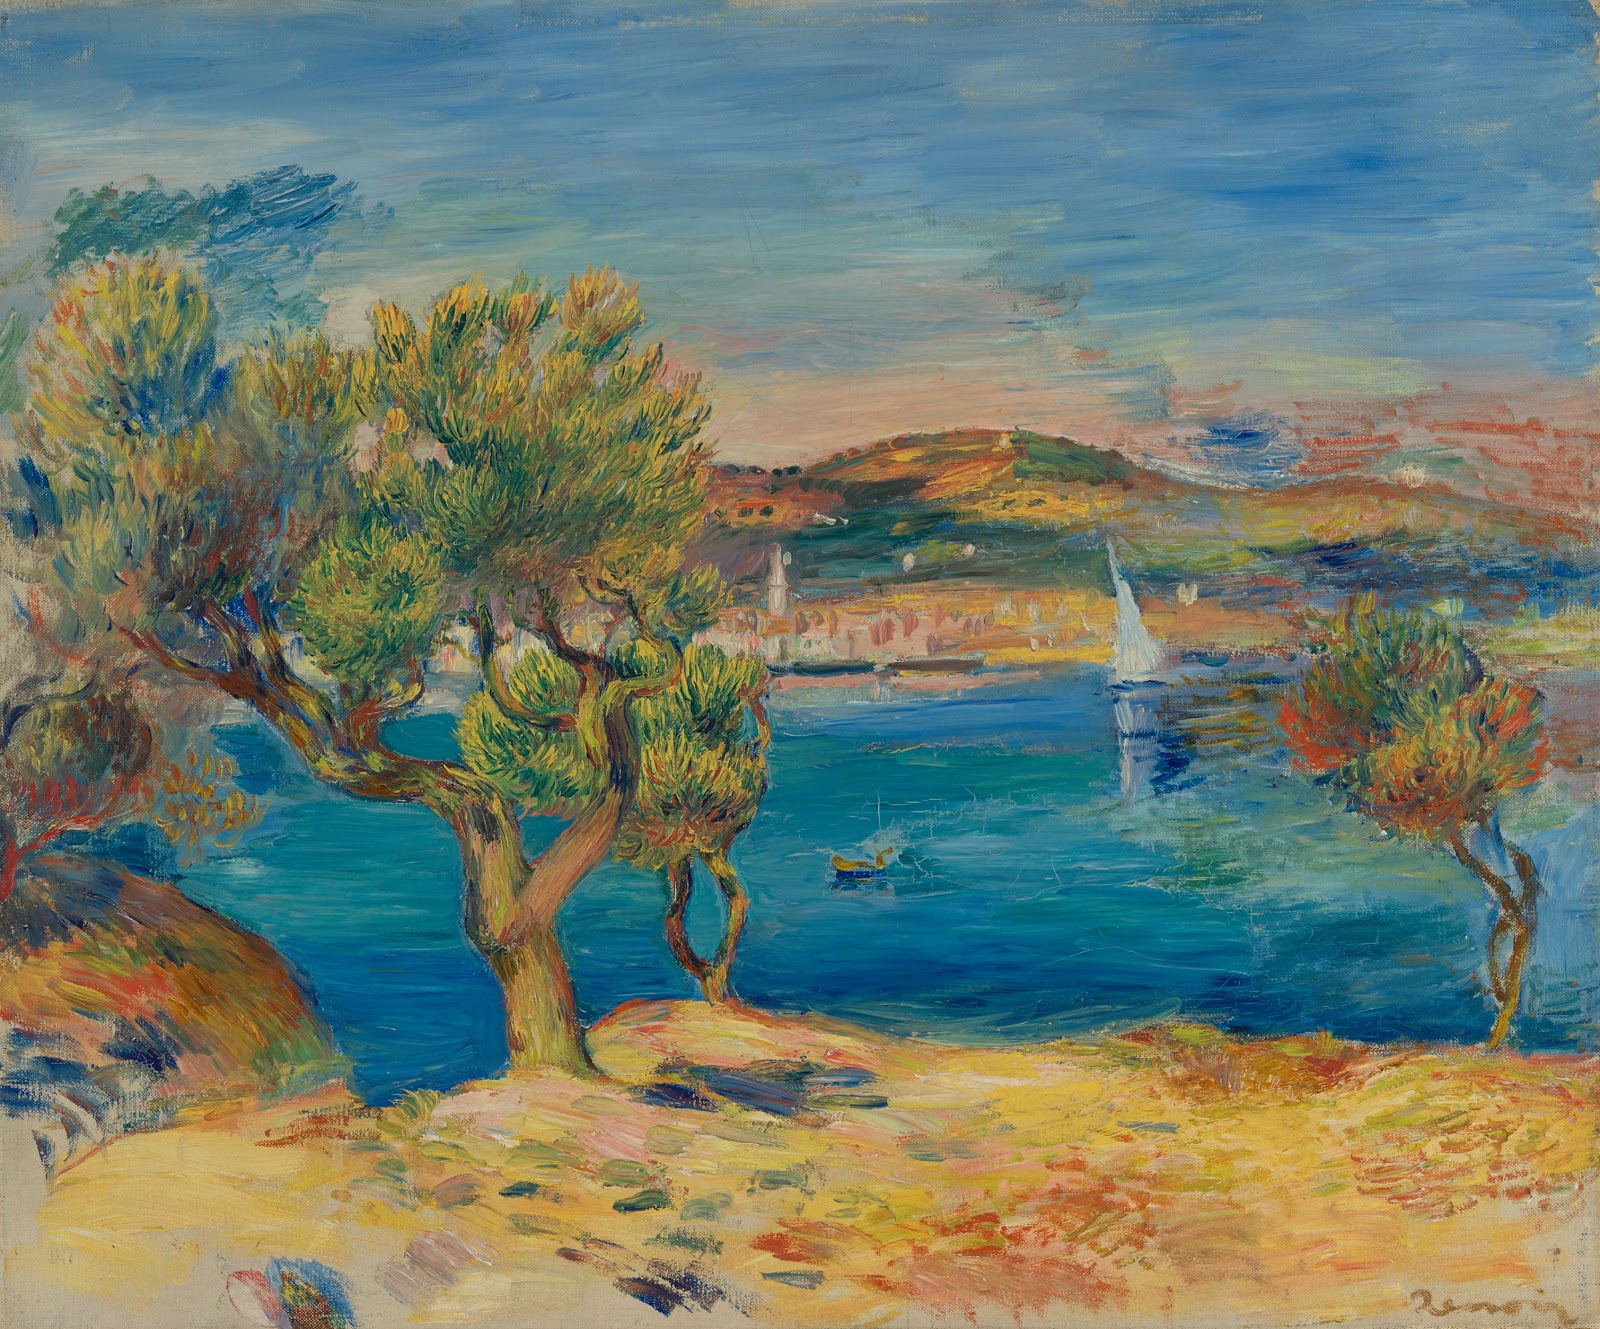 Pierre+Auguste+Renoir-1841-1-19 (829).jpg